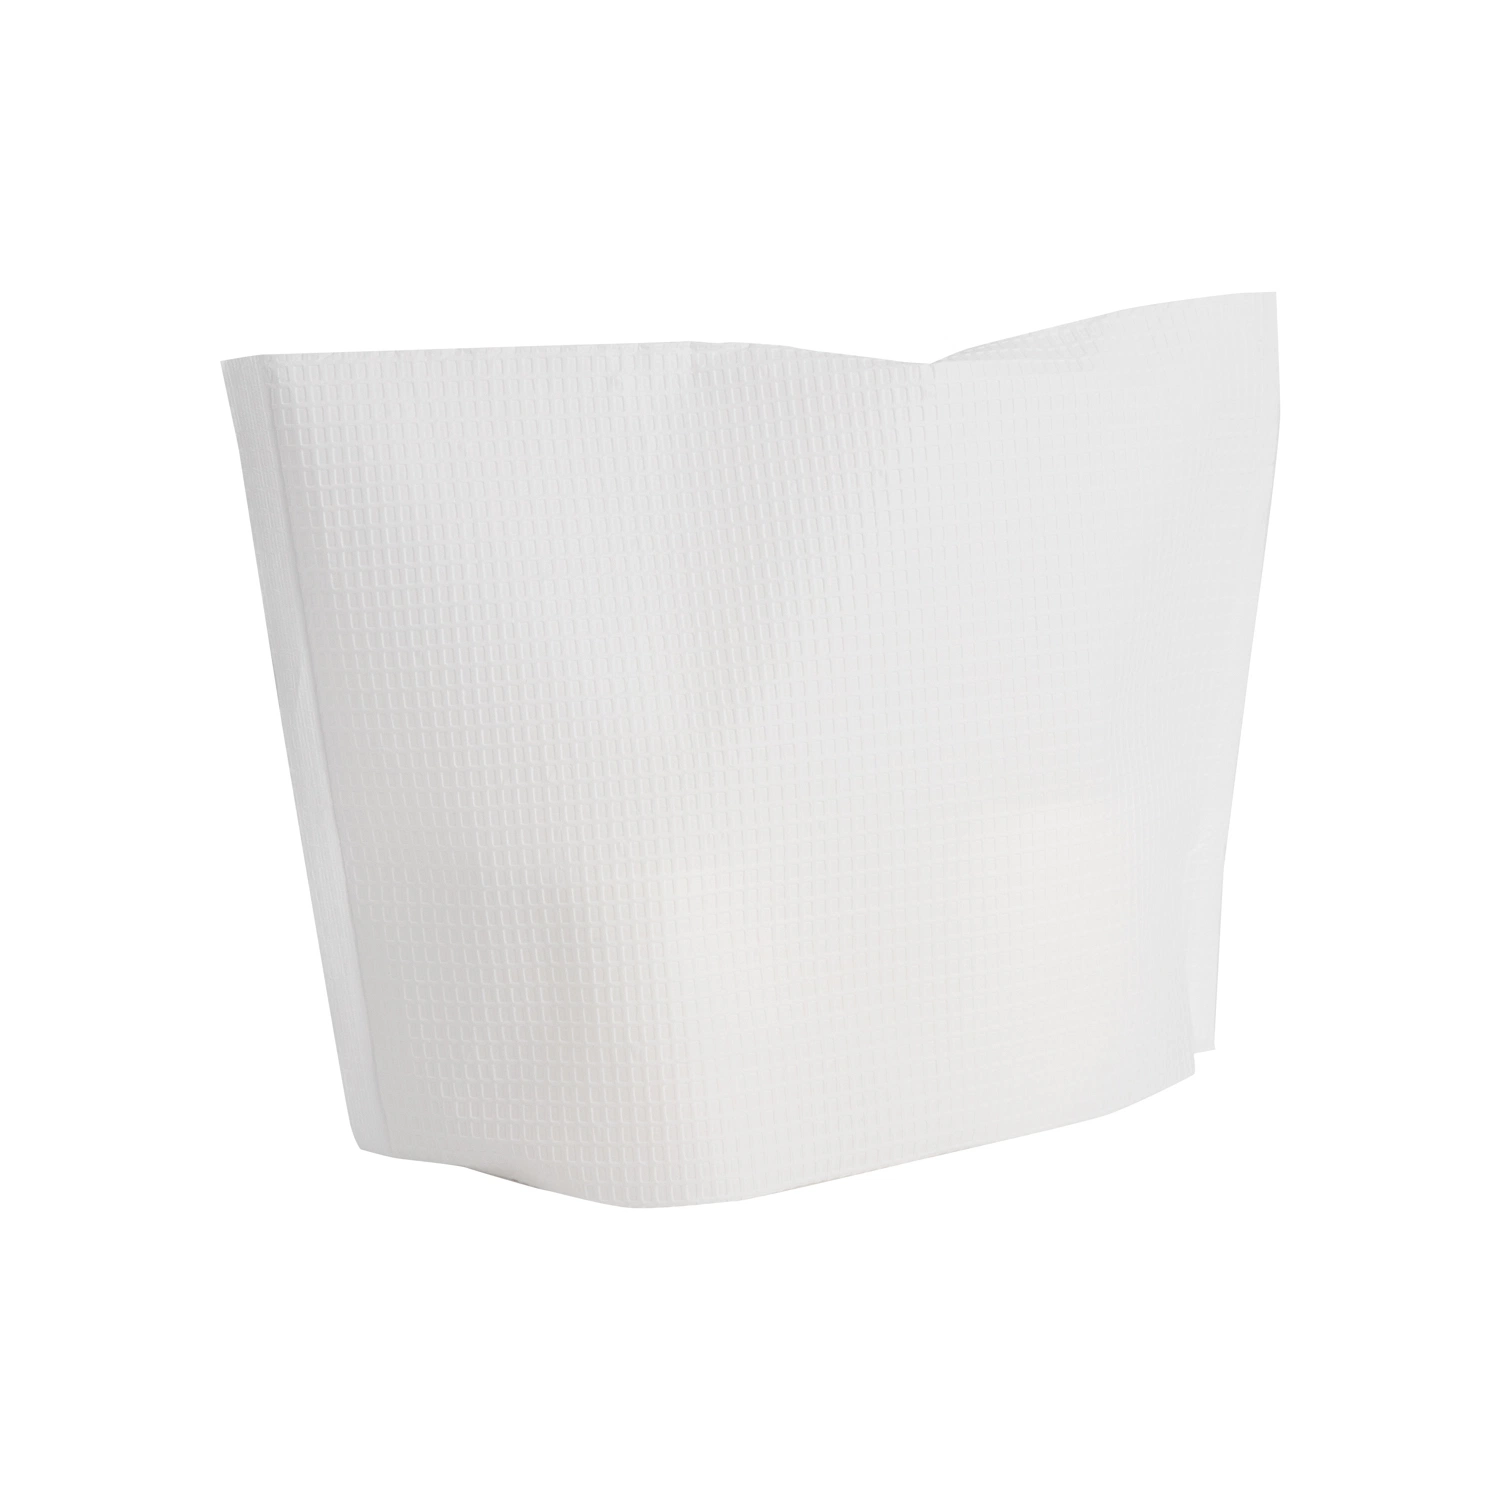 Günstige Preis Dental Stuhl Kopfstütze deckt mit Gewebe / Poly Material Für Krankenhäuser